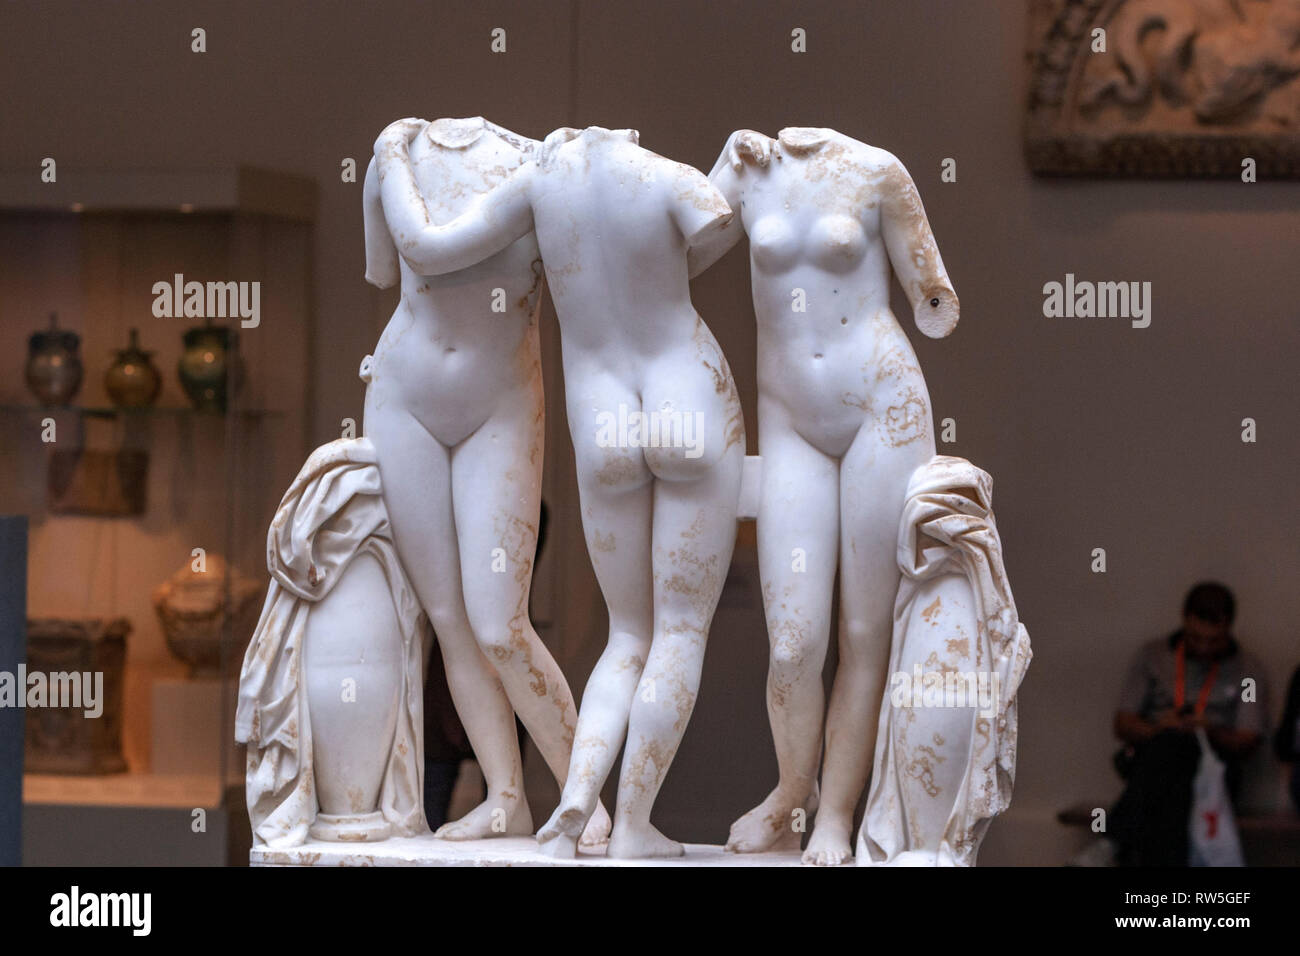 Statua in marmo gruppo delle Tre Grazie, romano, il Metropolitan Museum of Art, Manhattan, New York STATI UNITI D'AMERICA Foto Stock